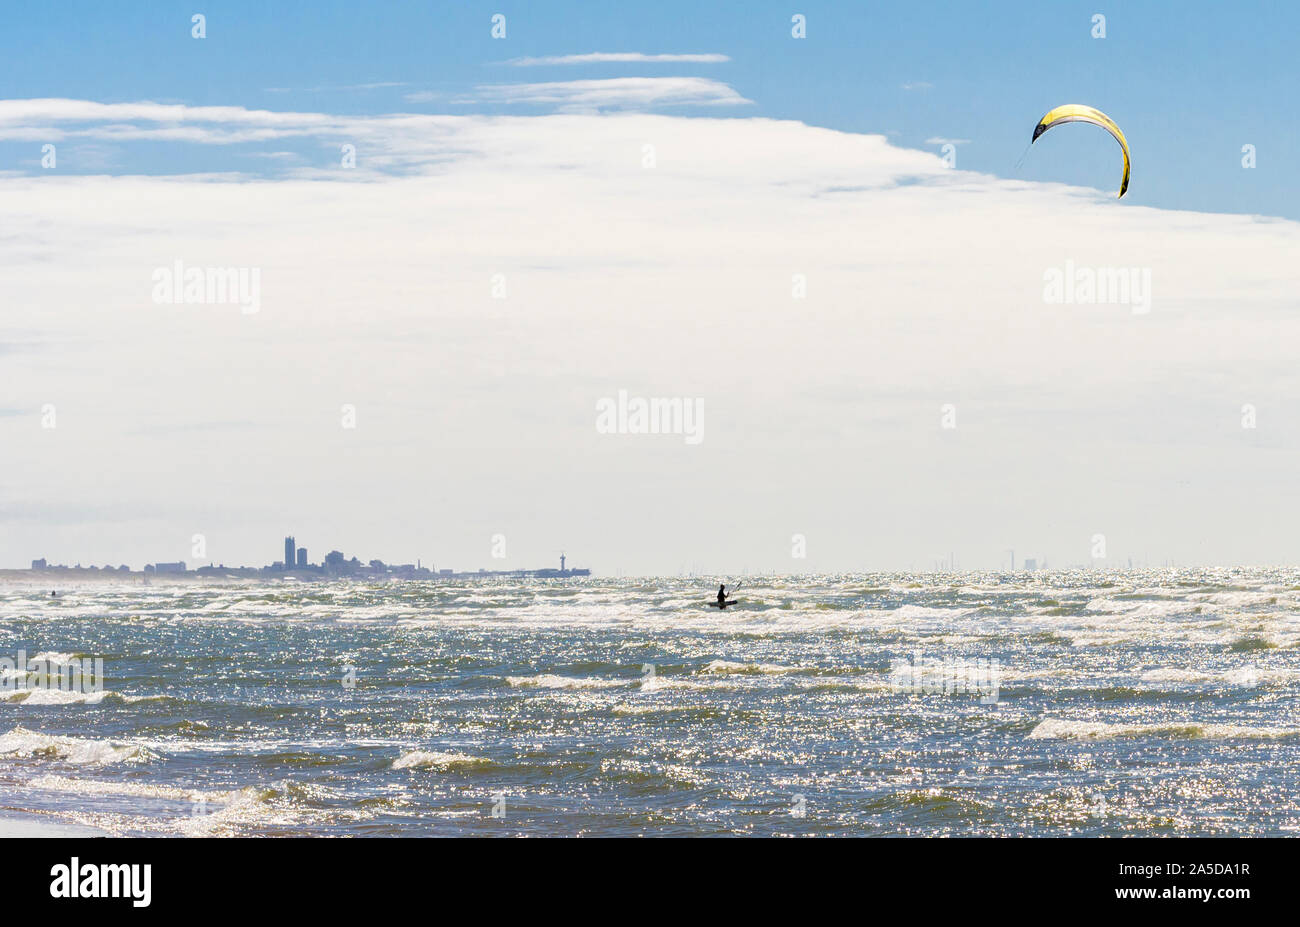 Pasando en frente a la ciudad de La Haya (Den Haag), kite surf está disfrutando el tormentoso Mar del Norte en una playa de Katwijk, Países Bajos. Foto de stock